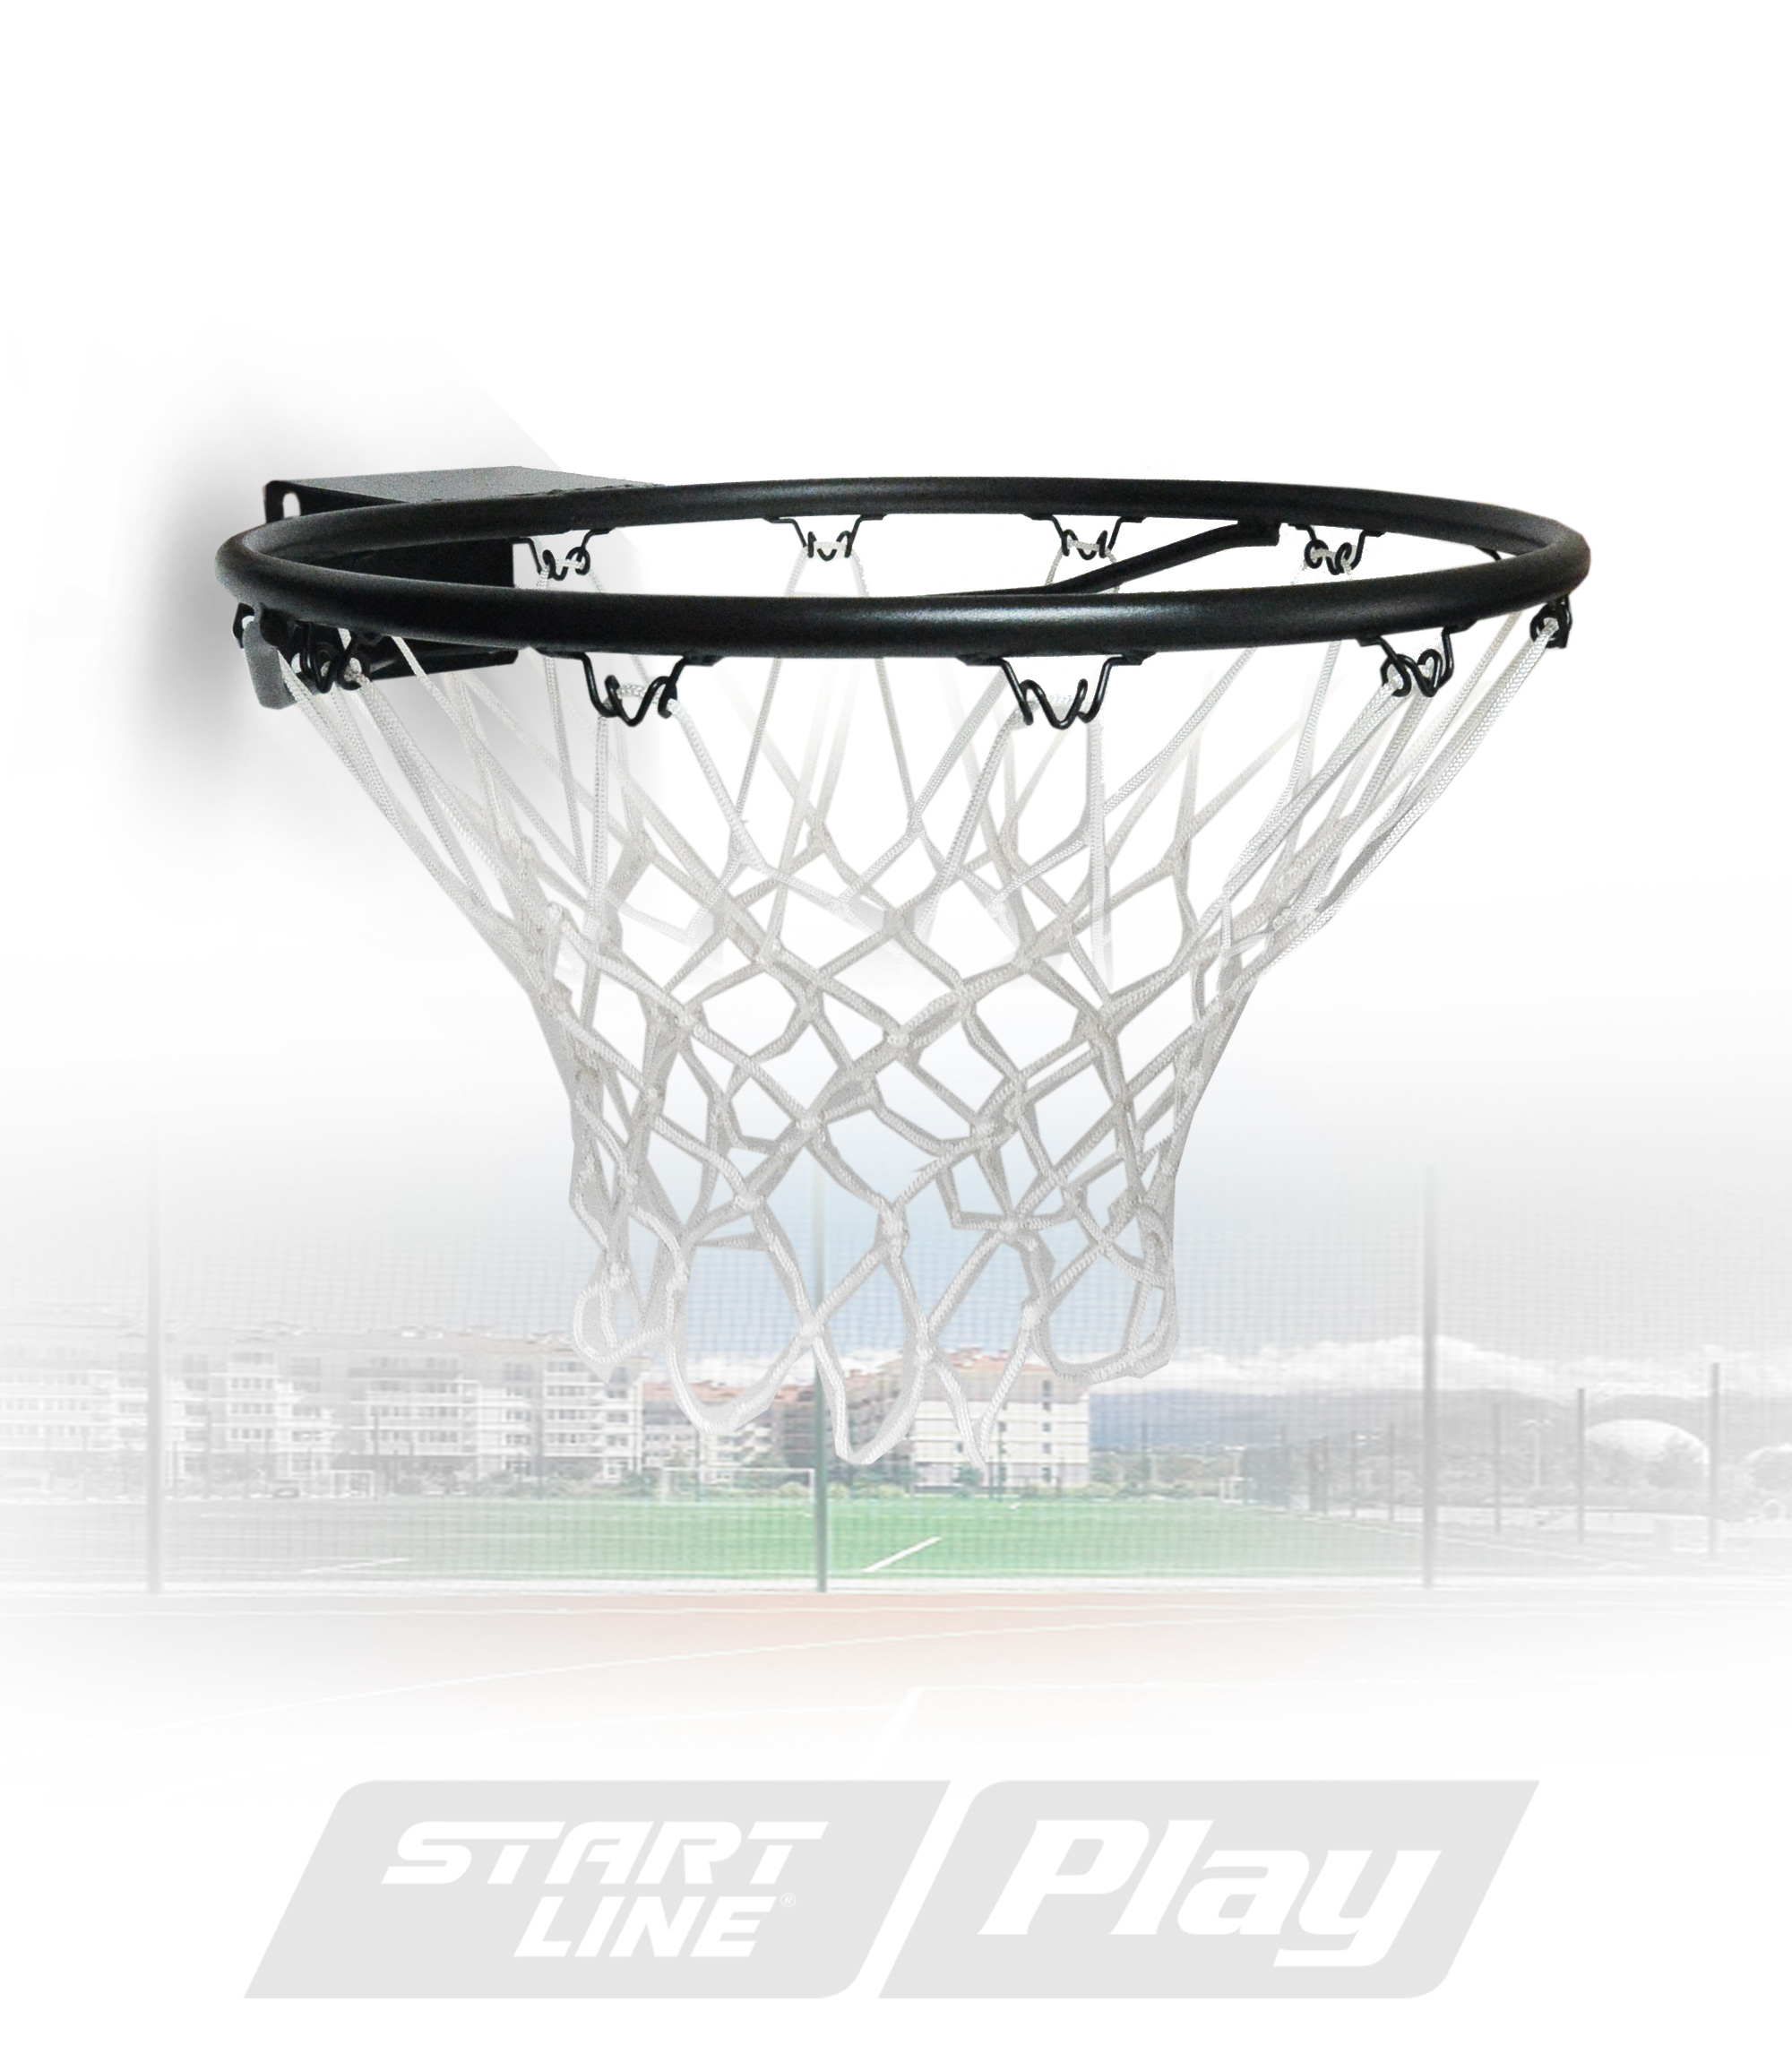 Кольцо баскетбольное Start Line Play No7 с сеткой.